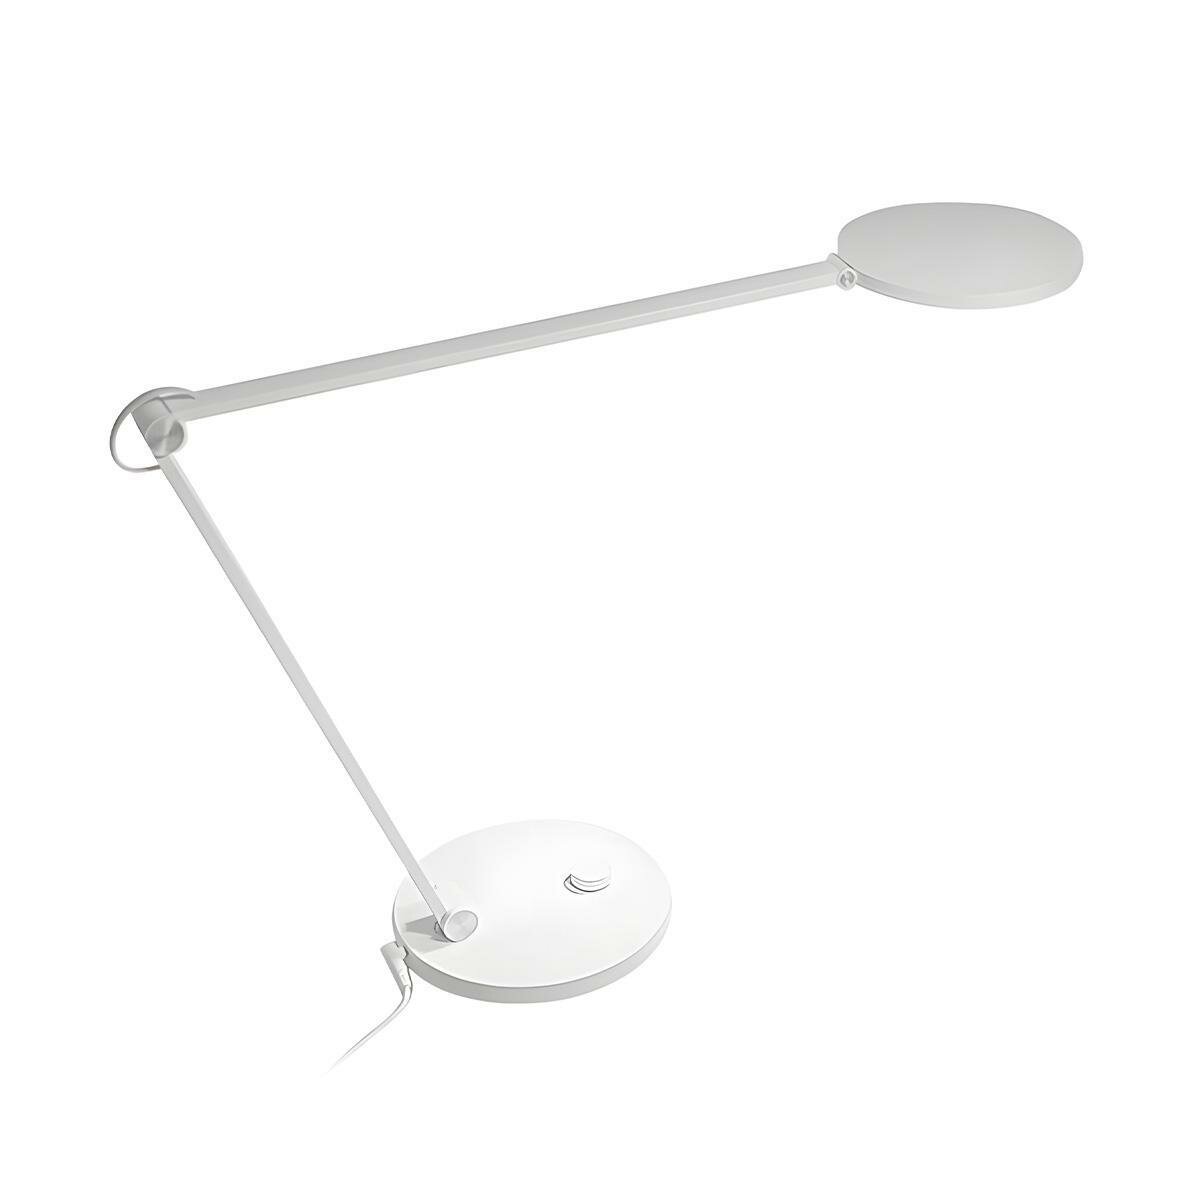 Умная настольная лампа MI Smart LED Desk Lamp Pro Xiaomi (BHR4119GL). Профессиональная защита глаз, отсутствие мерцания.